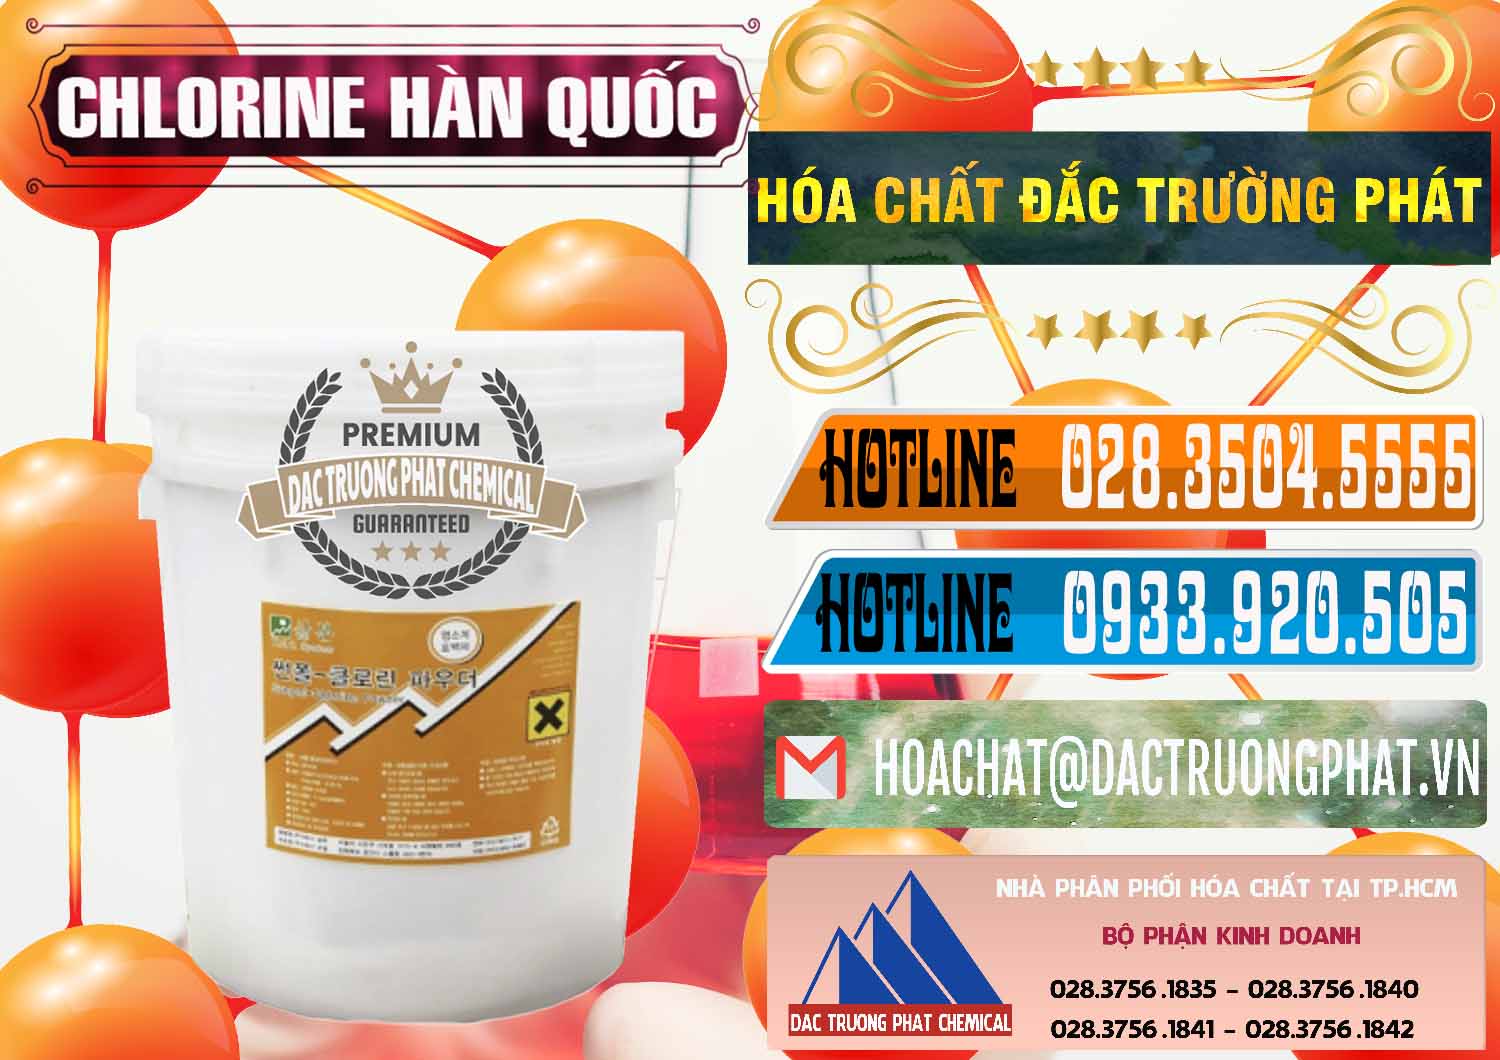 Đơn vị chuyên bán _ cung cấp Chlorine – Clorin 70% Hàn Quốc Korea - 0345 - Nơi cung cấp & phân phối hóa chất tại TP.HCM - stmp.net